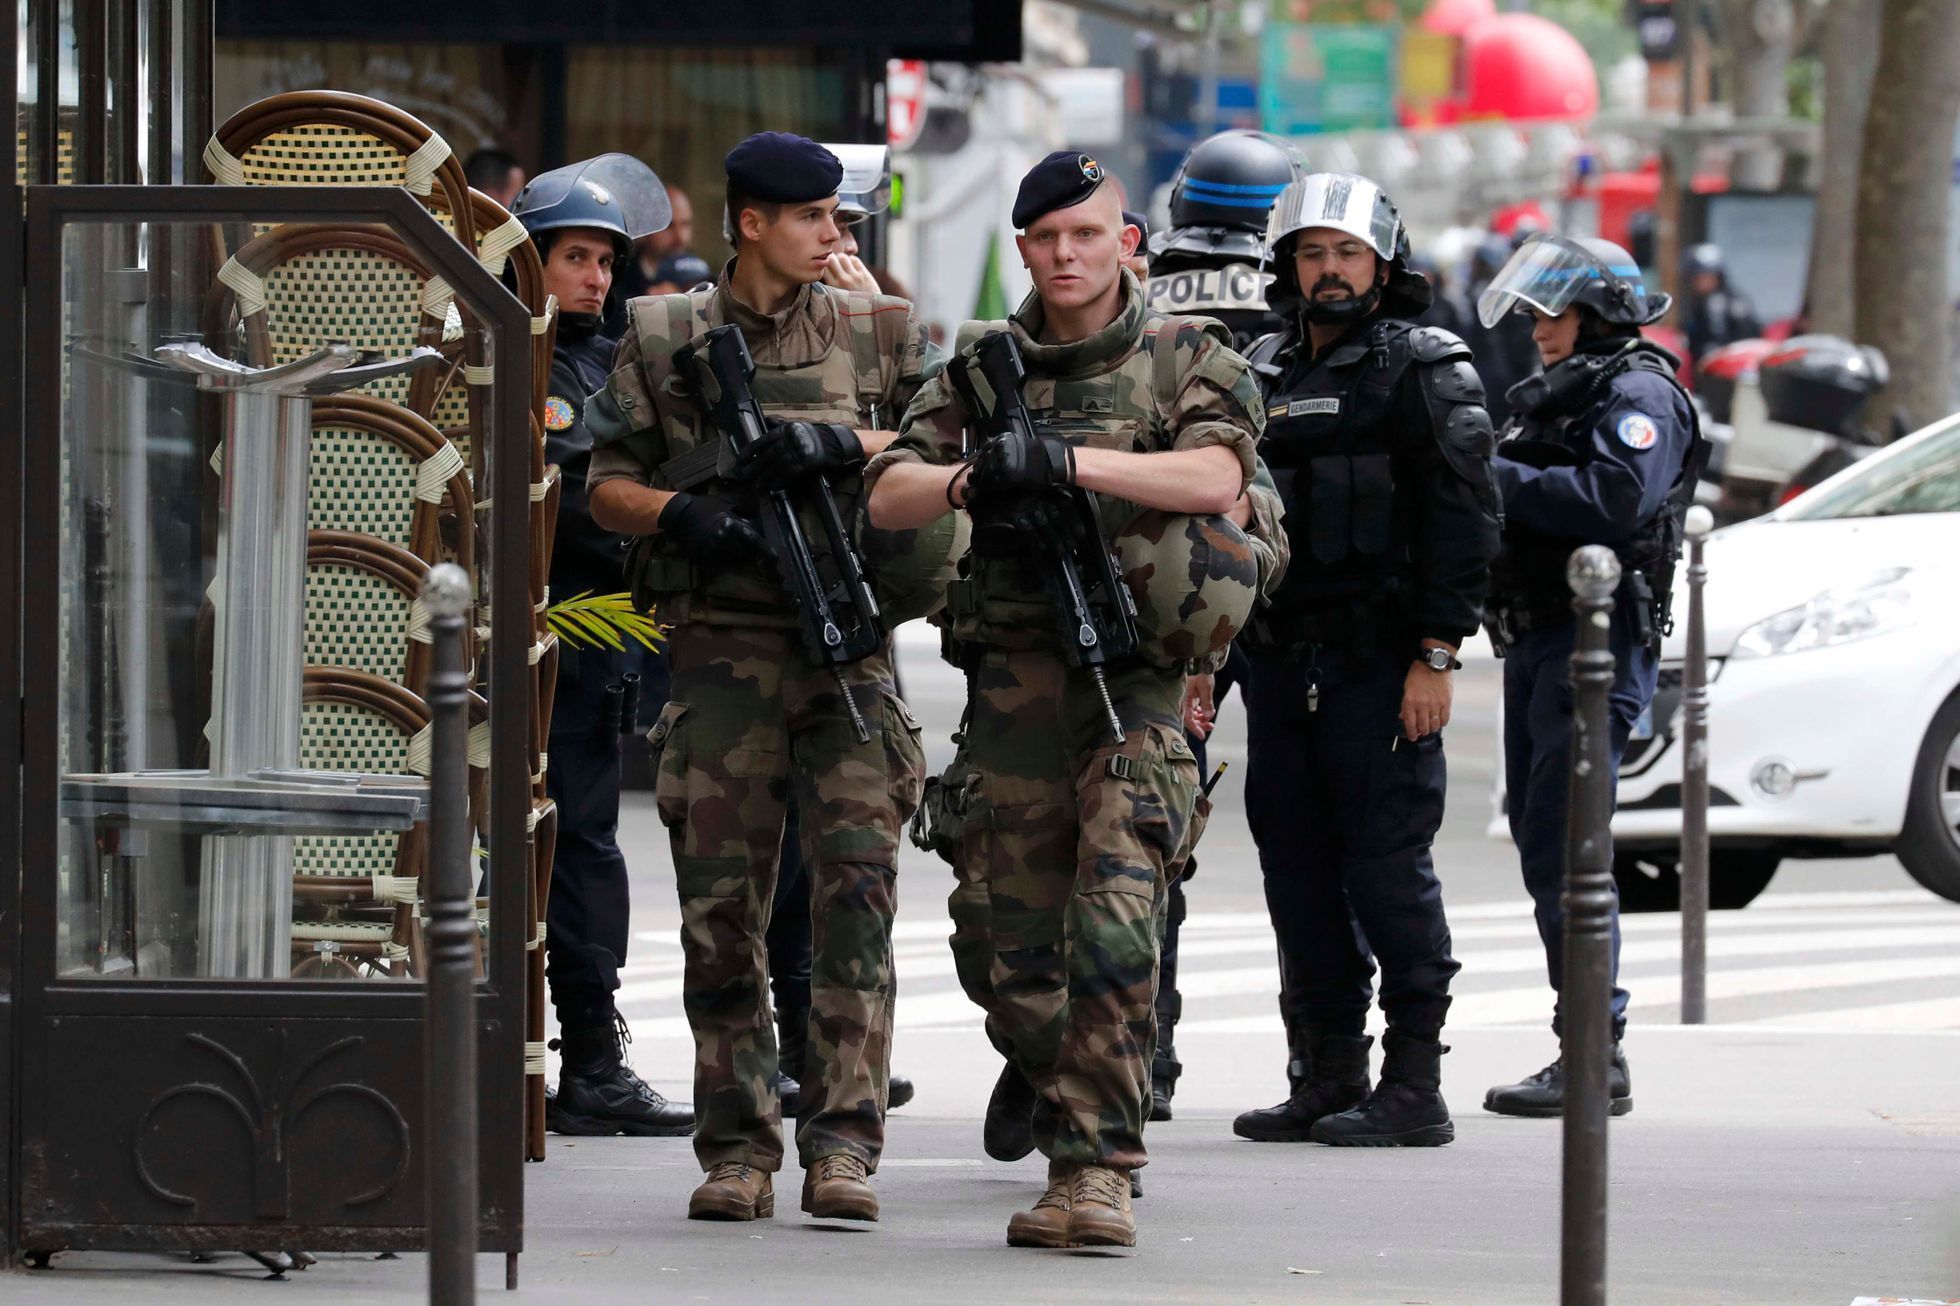 Vojáci v ulicích Paříže